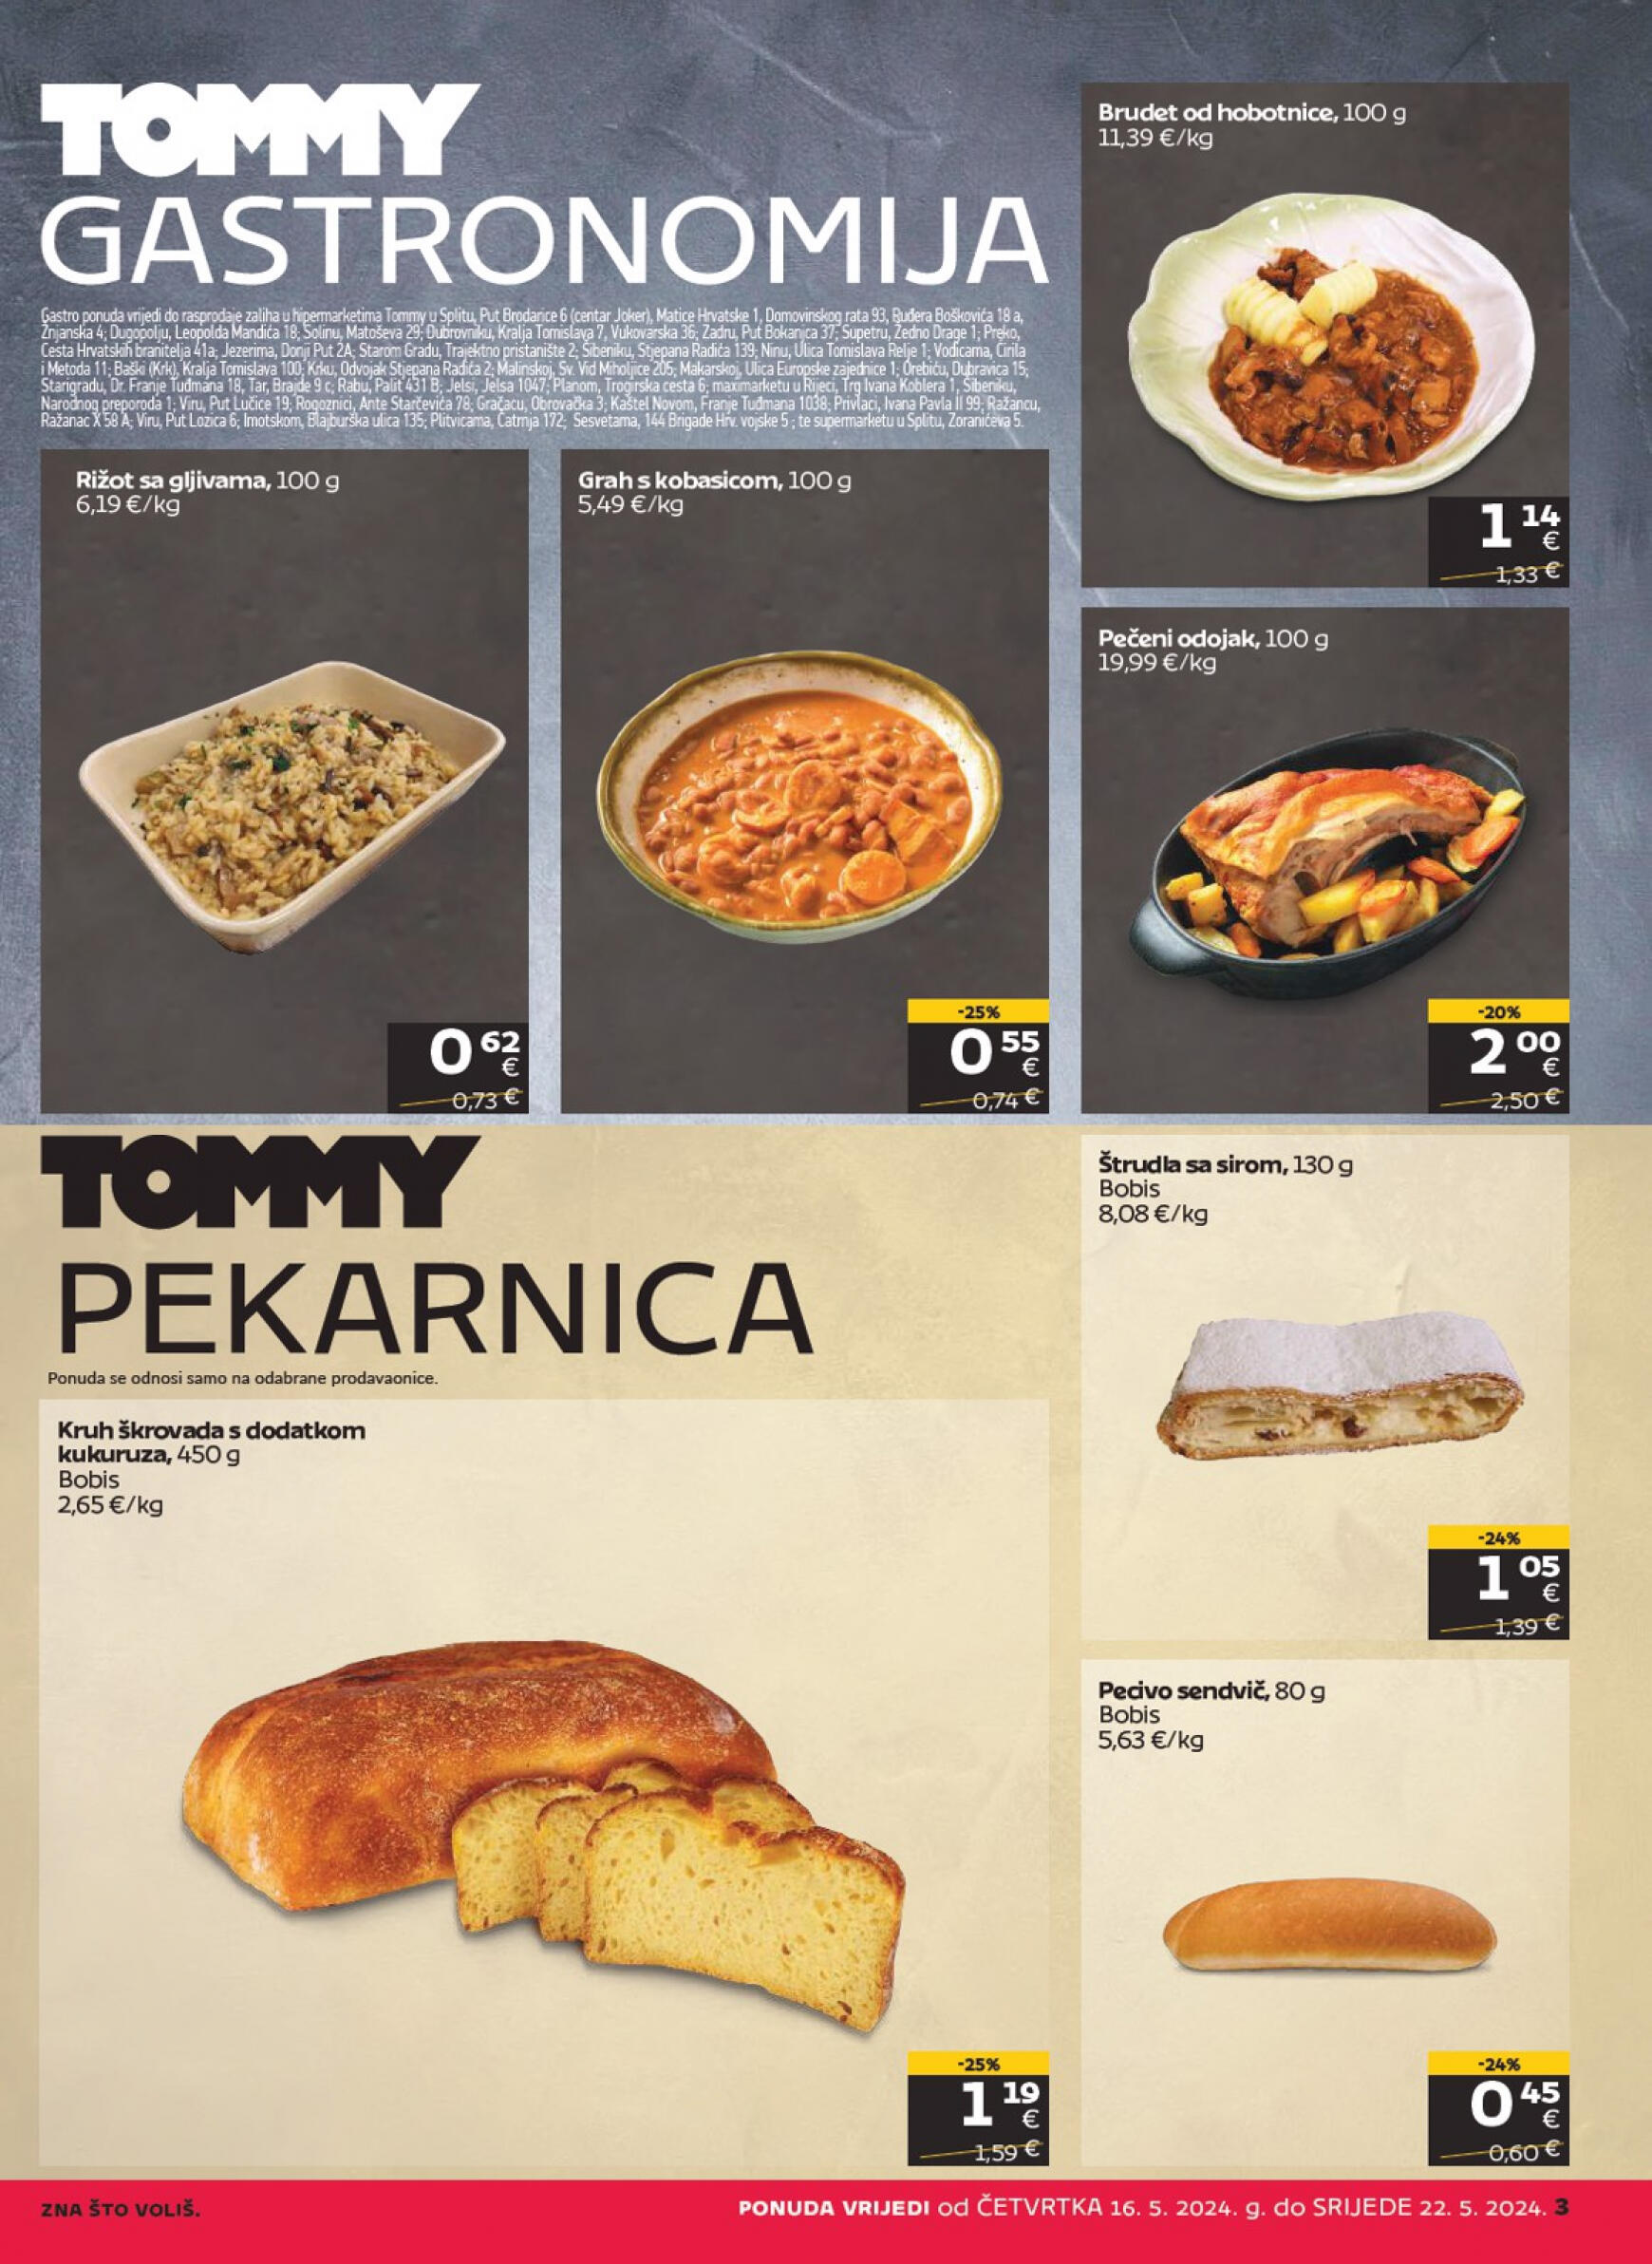 tommy - Novi katalog Tommy 16.05. - 22.05. - page: 3